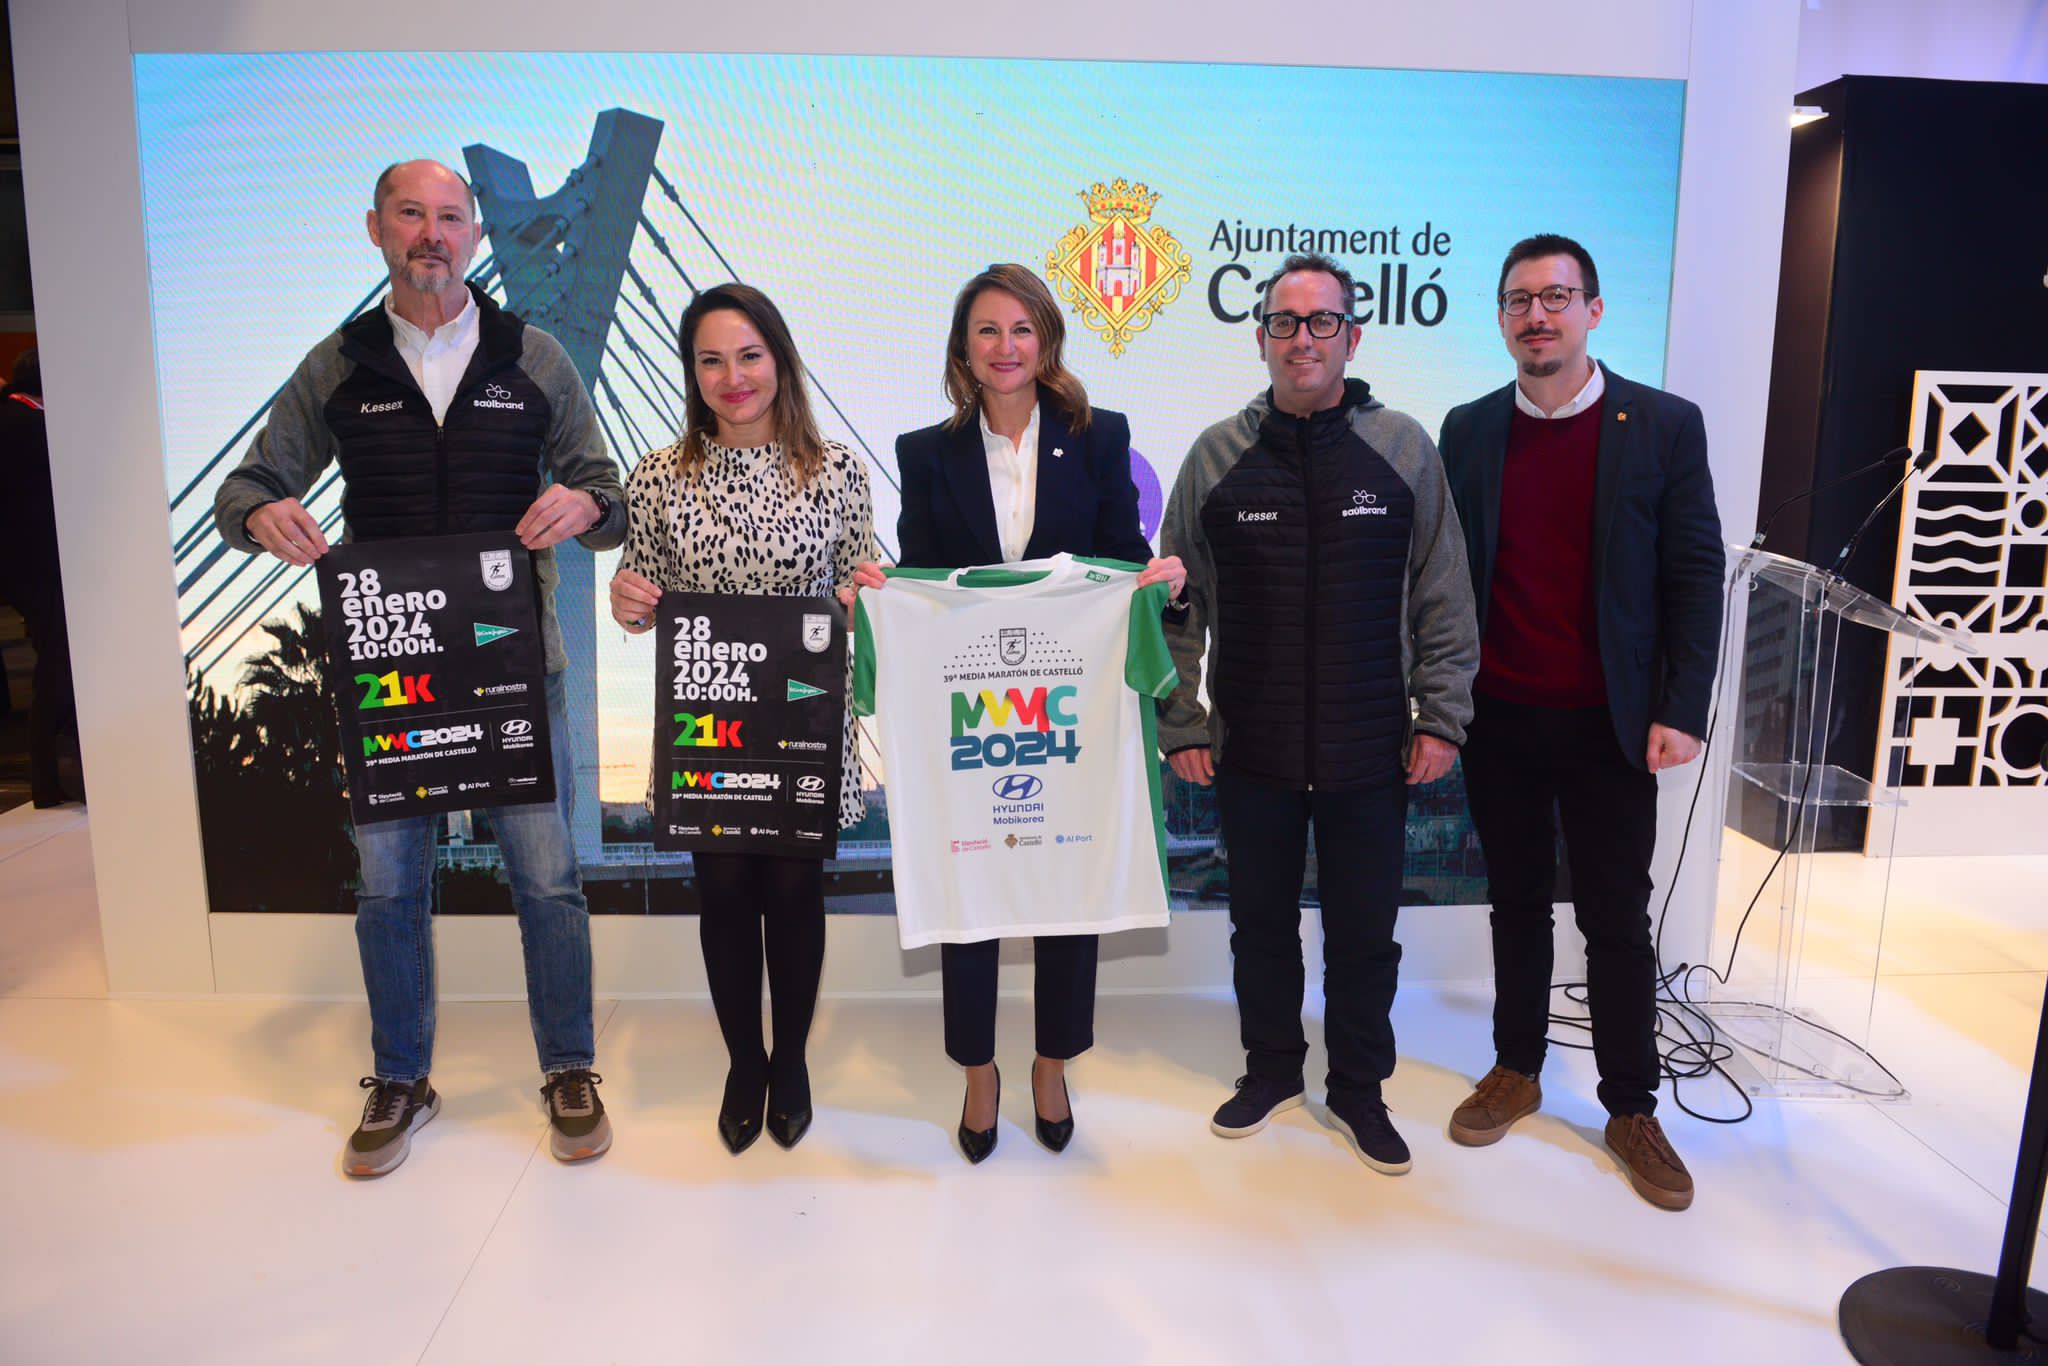 La Alcaldesa de Castellón presenta la camiseta oficial de la Media Maratón de Castellón en Fitur